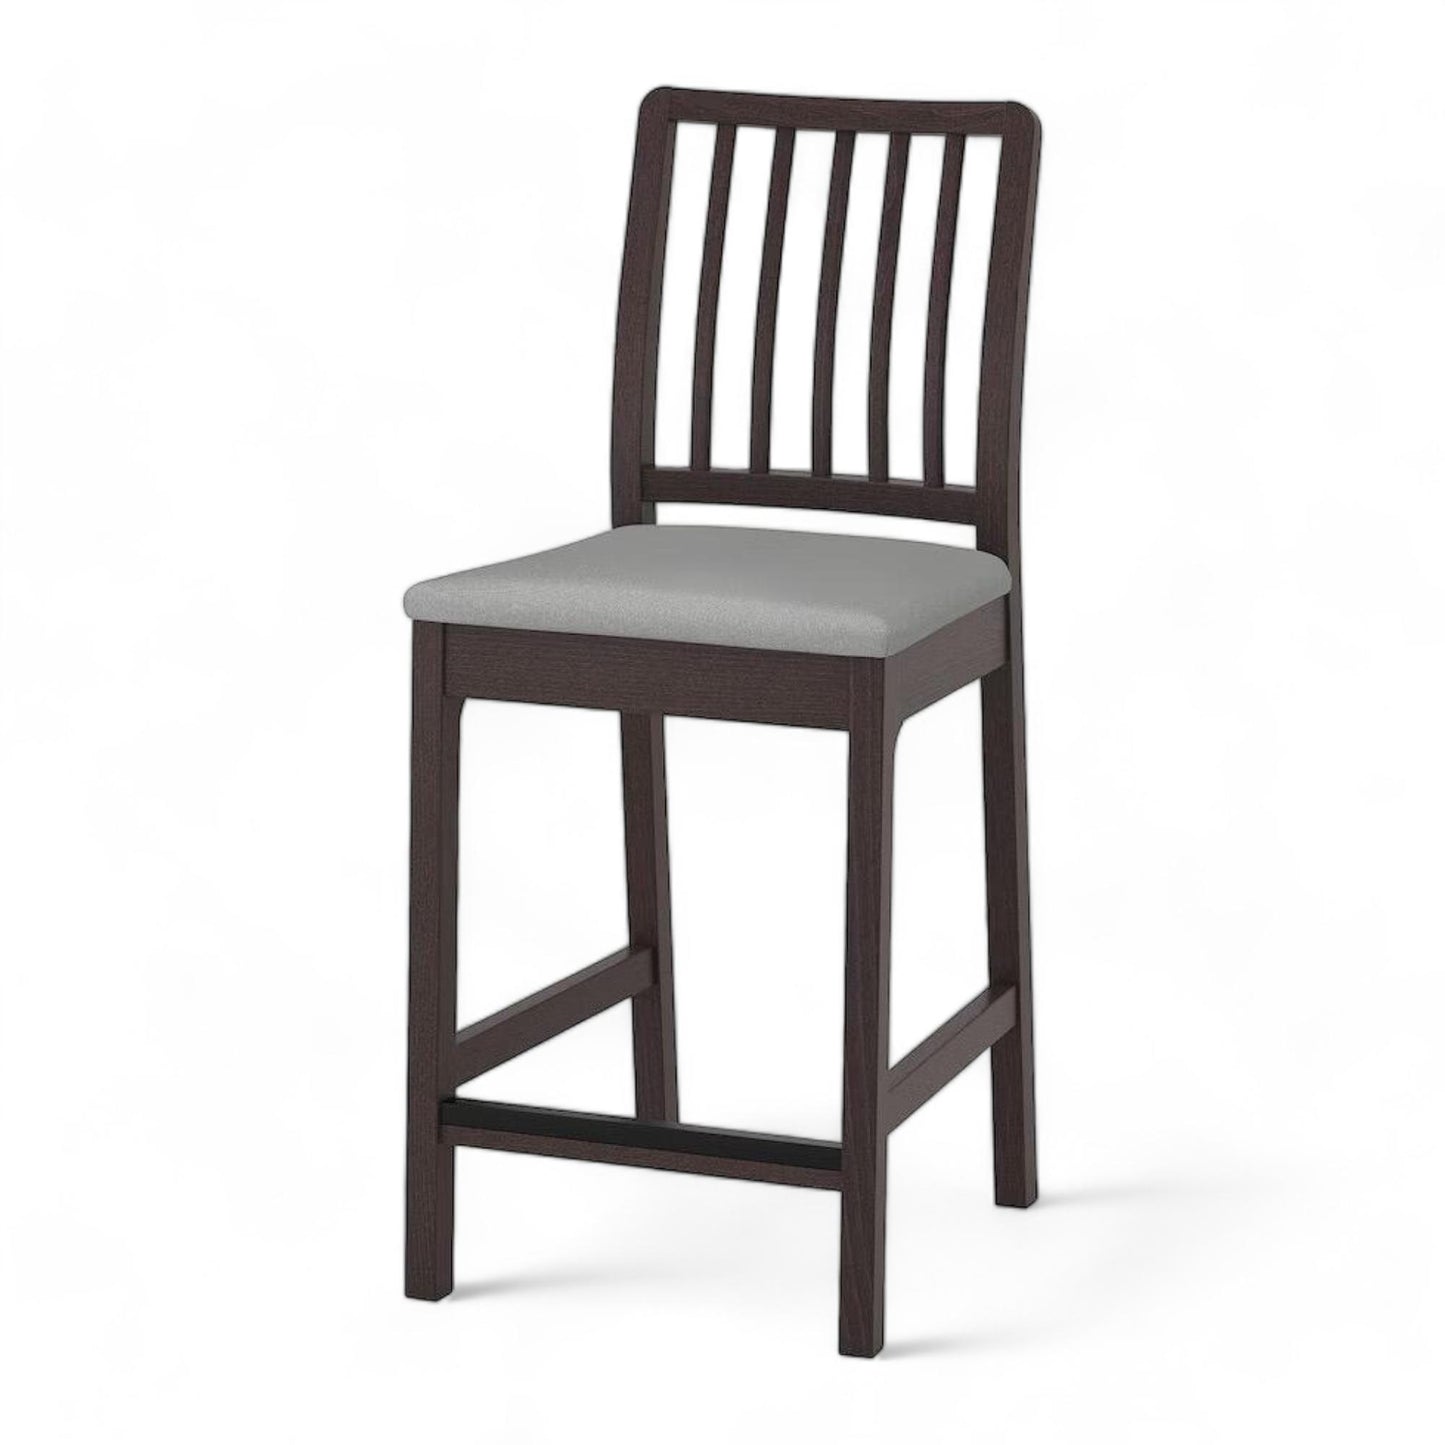 Kvalitetssikret | IKEA Ekedalen barstol i mørkebrun